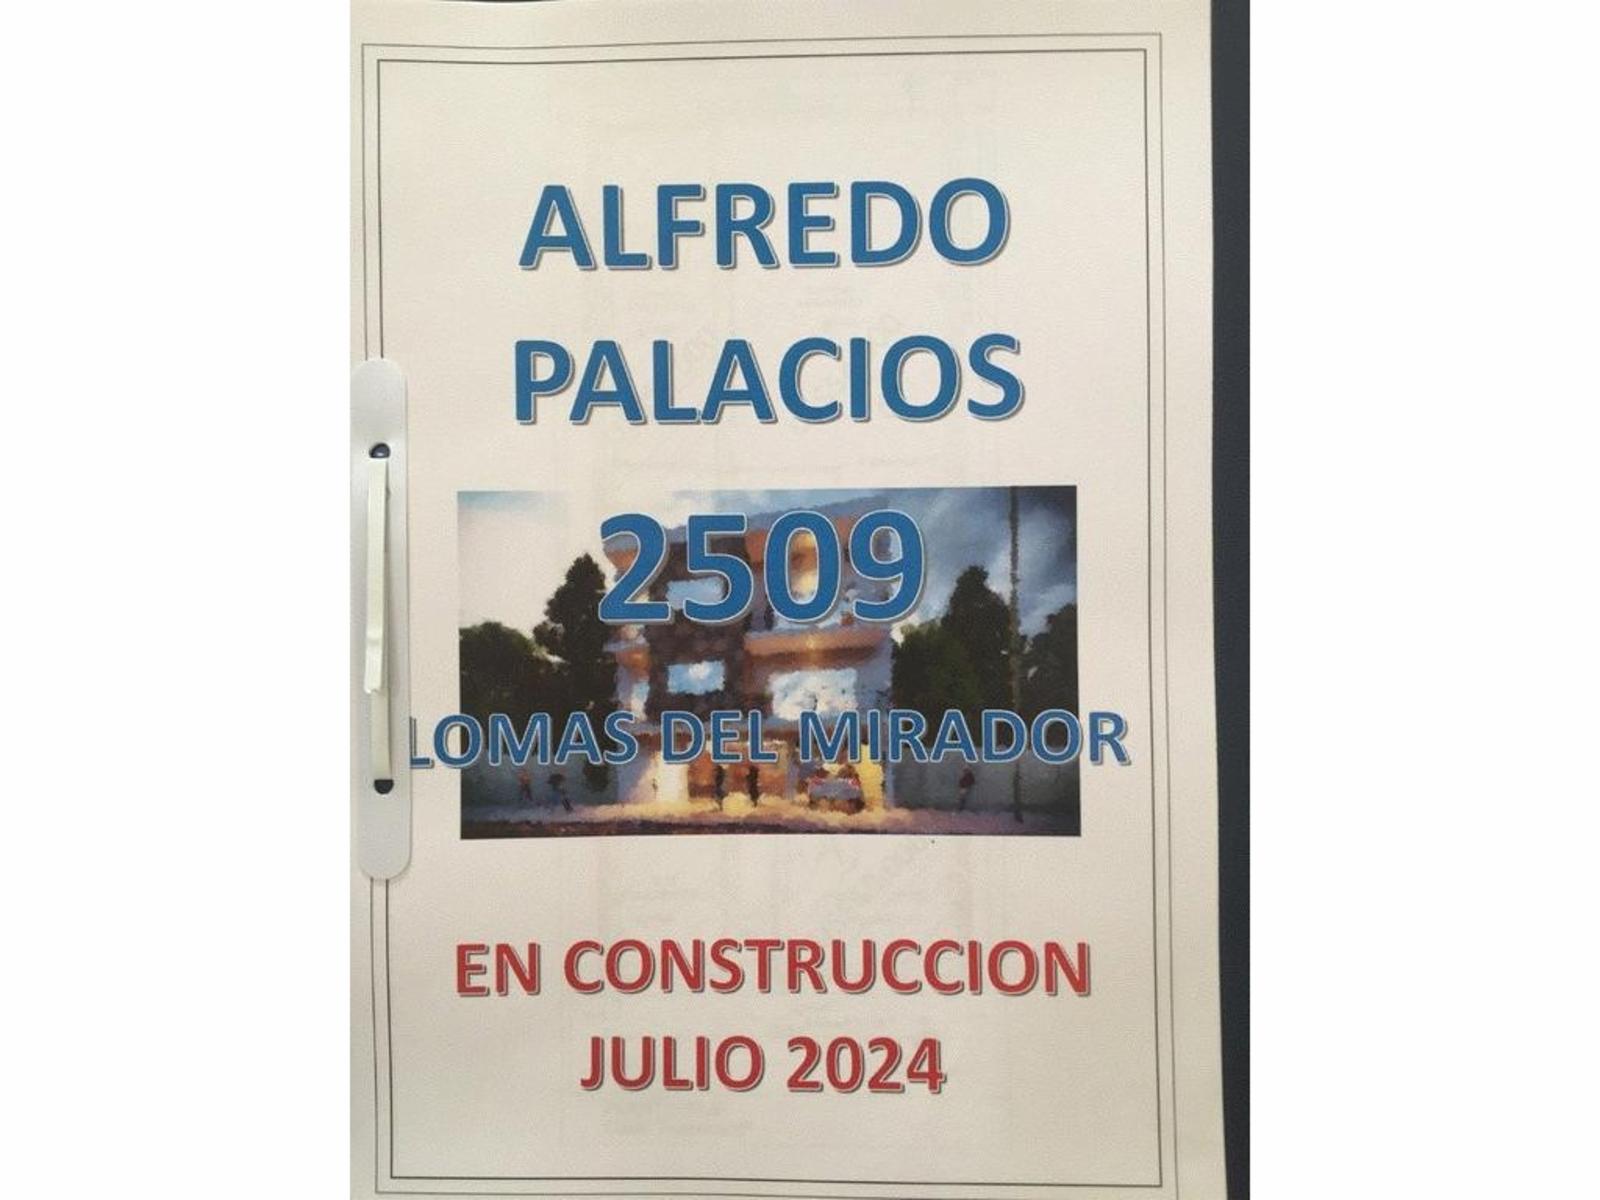 ALFREDO PALACIOS 2509 - DEPARTAMENTOS A CONSTRUIR EN LOMAS DEL MIRADOR